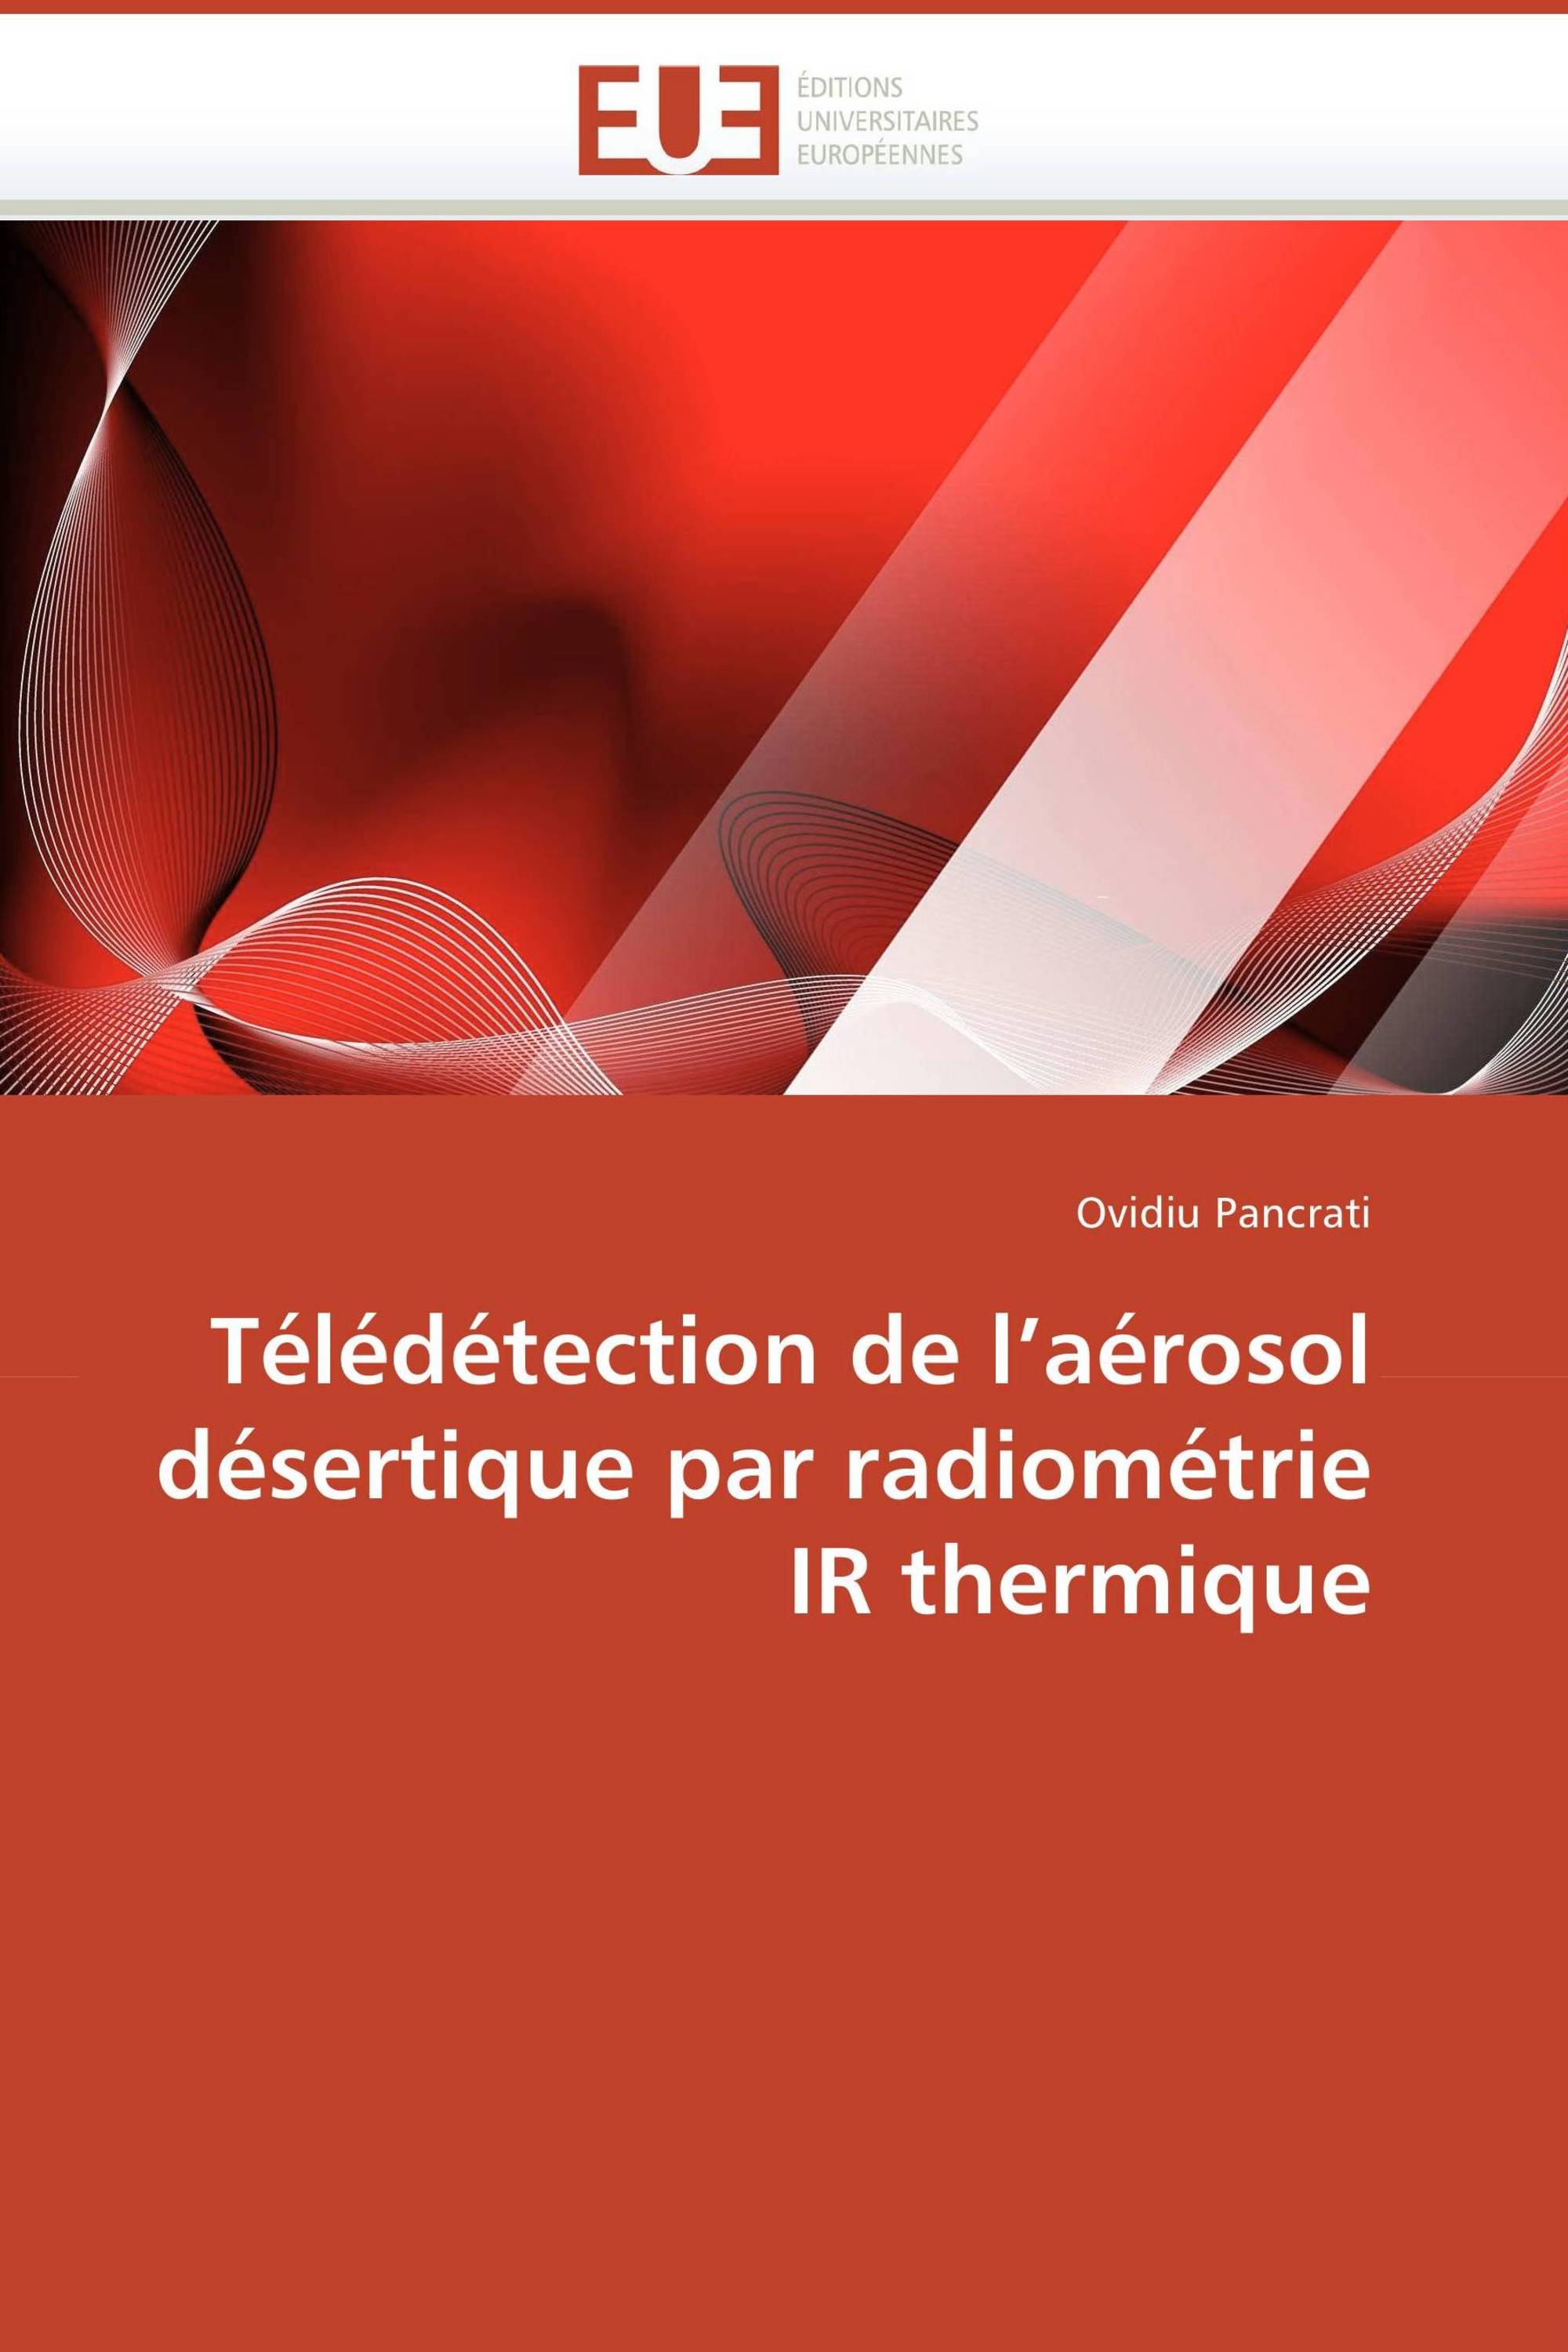 Télédétection de l’aérosol désertique par radiométrie IR thermique